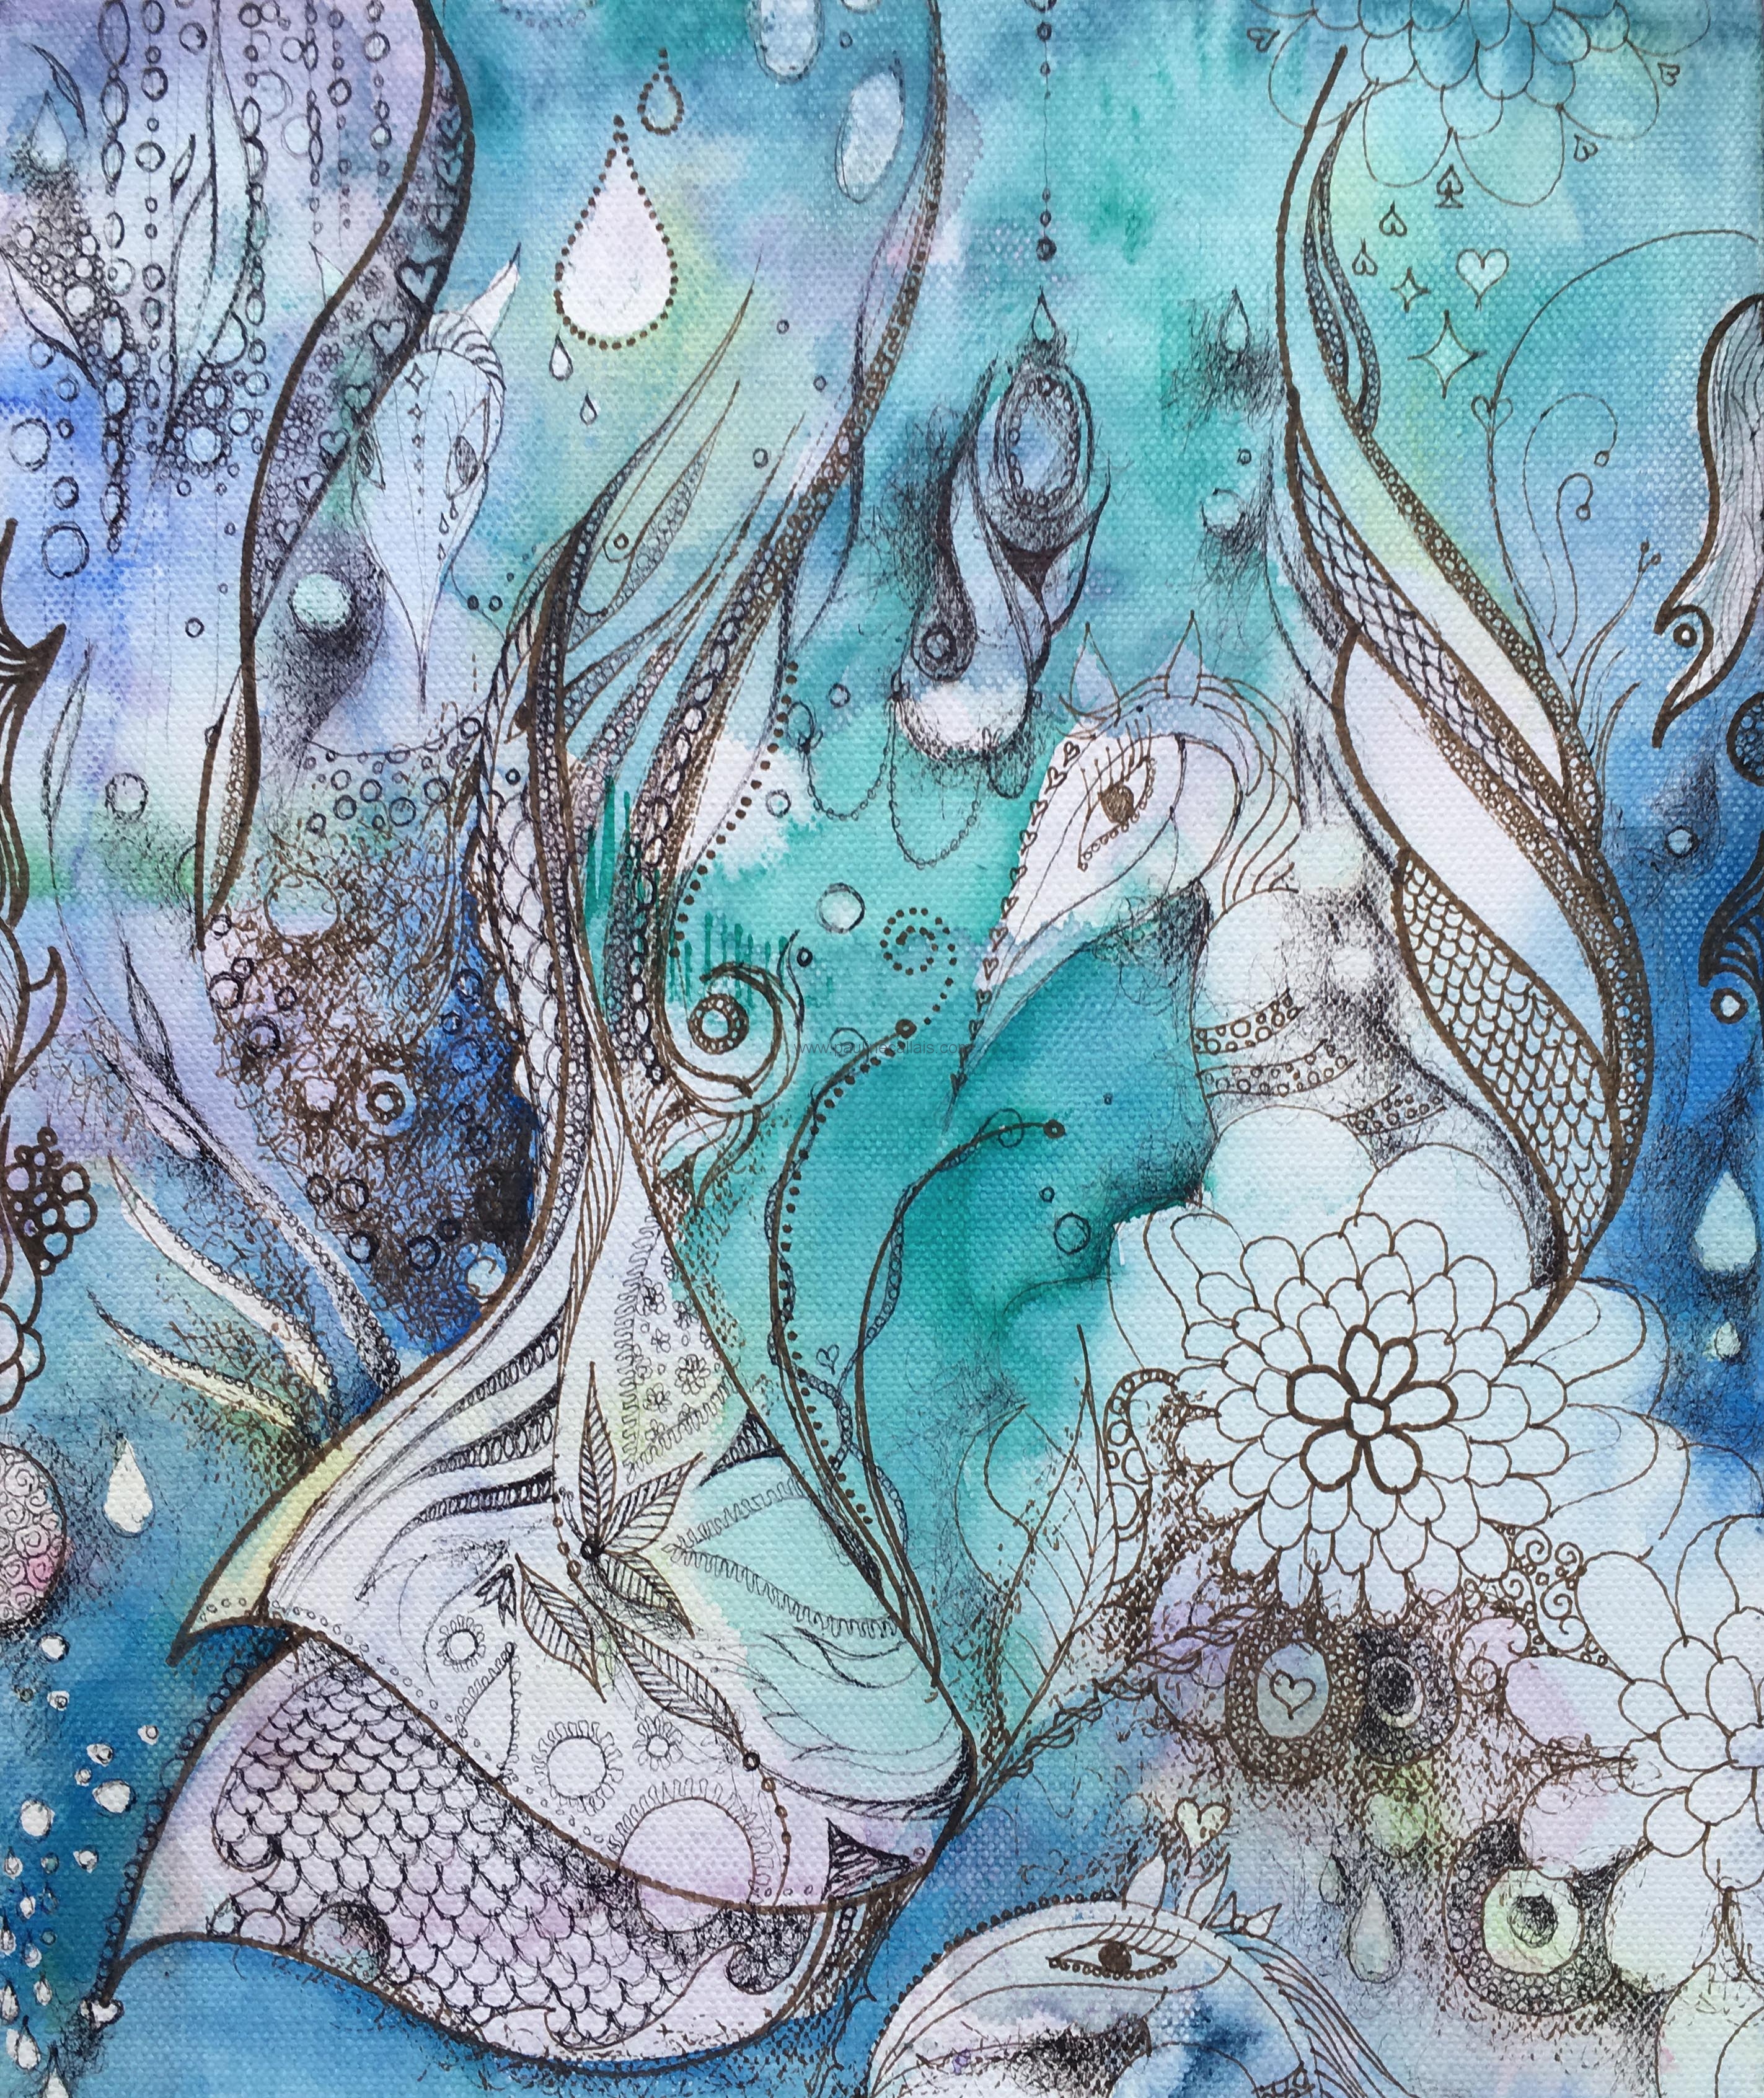 Abstract Art – Ocean Creatures